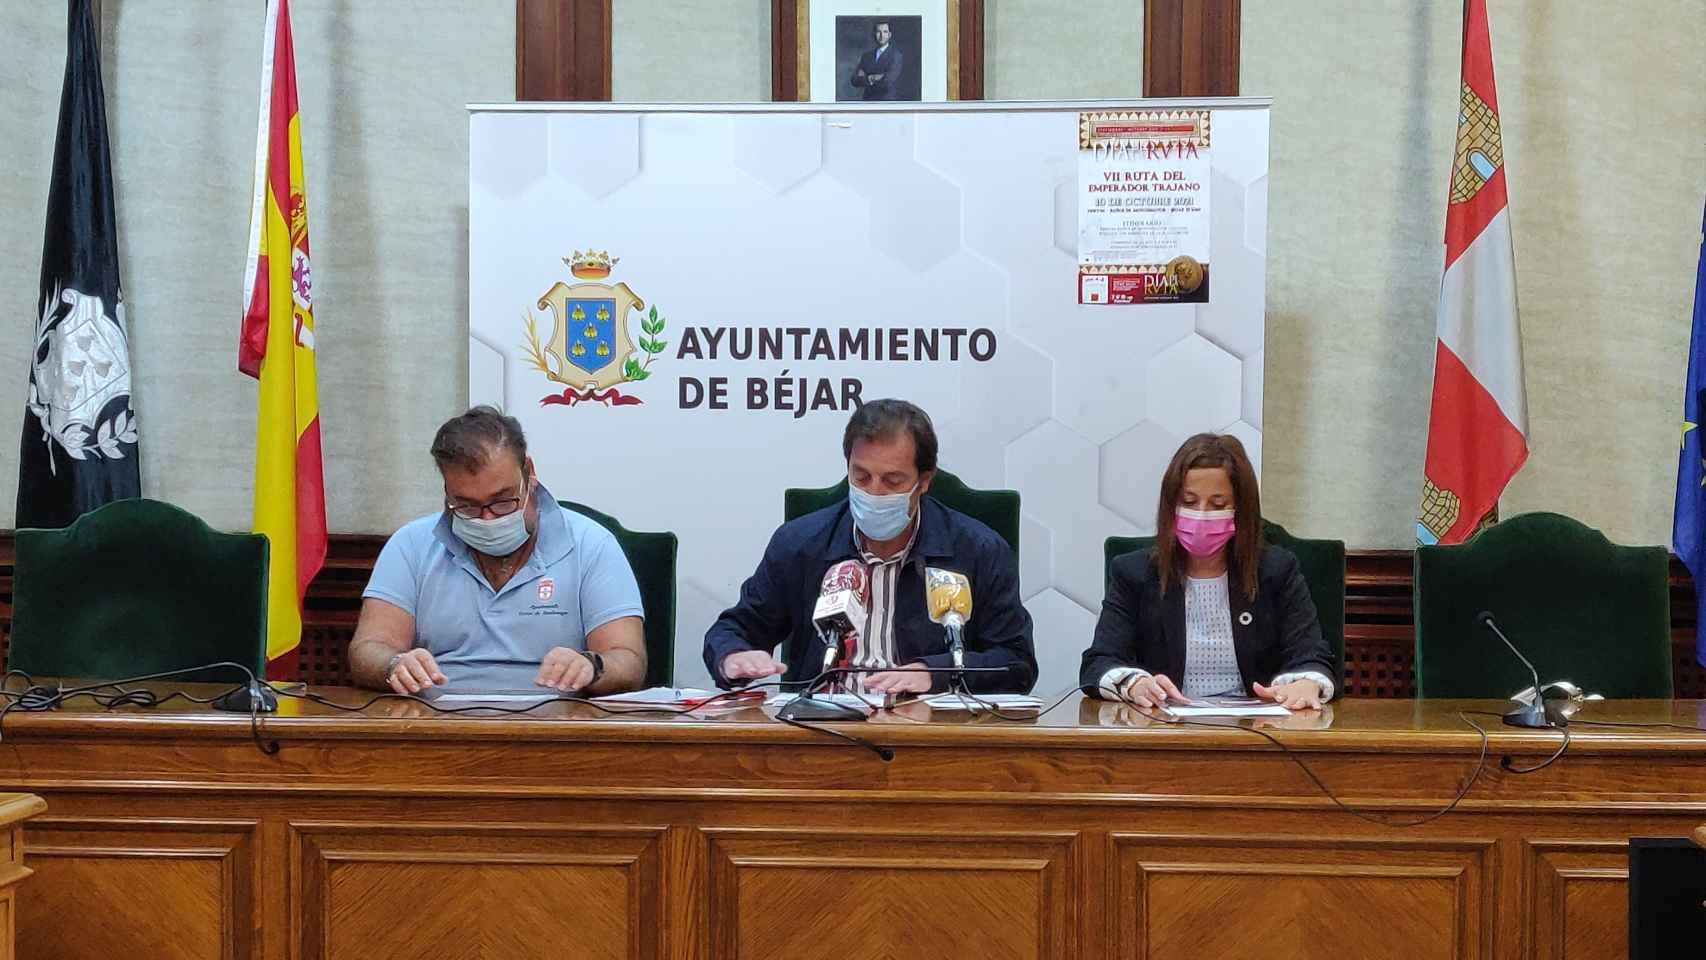 Jose Antonio Sanchez, José María Muñoz y Patricia Valle presentan la VII Ruta de los Emperadores